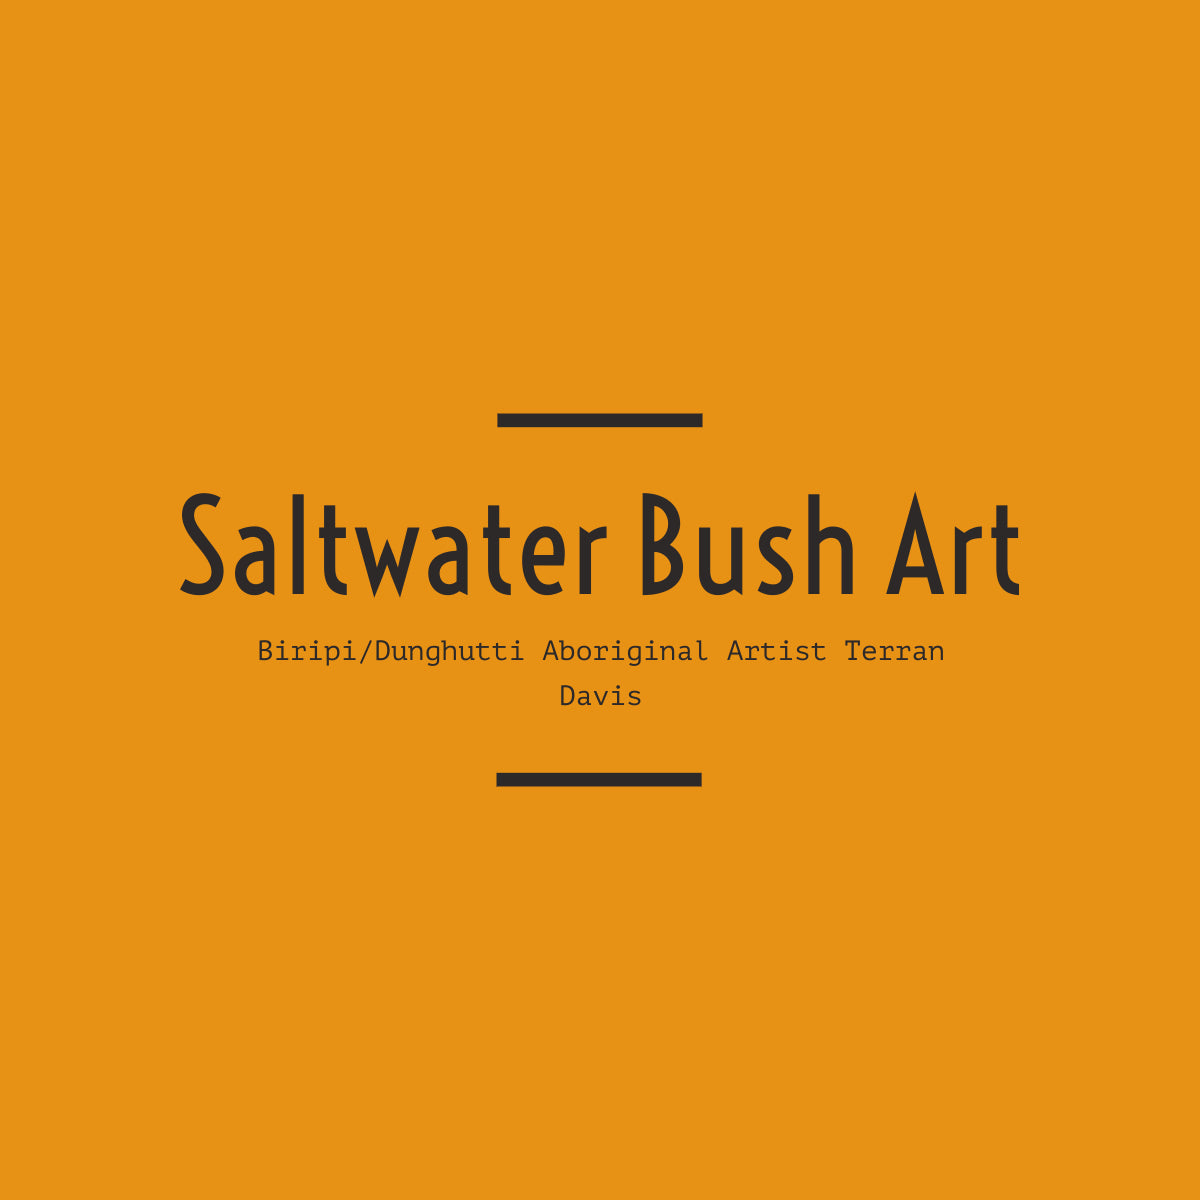 Saltwater Bush Art-logos.jpeg